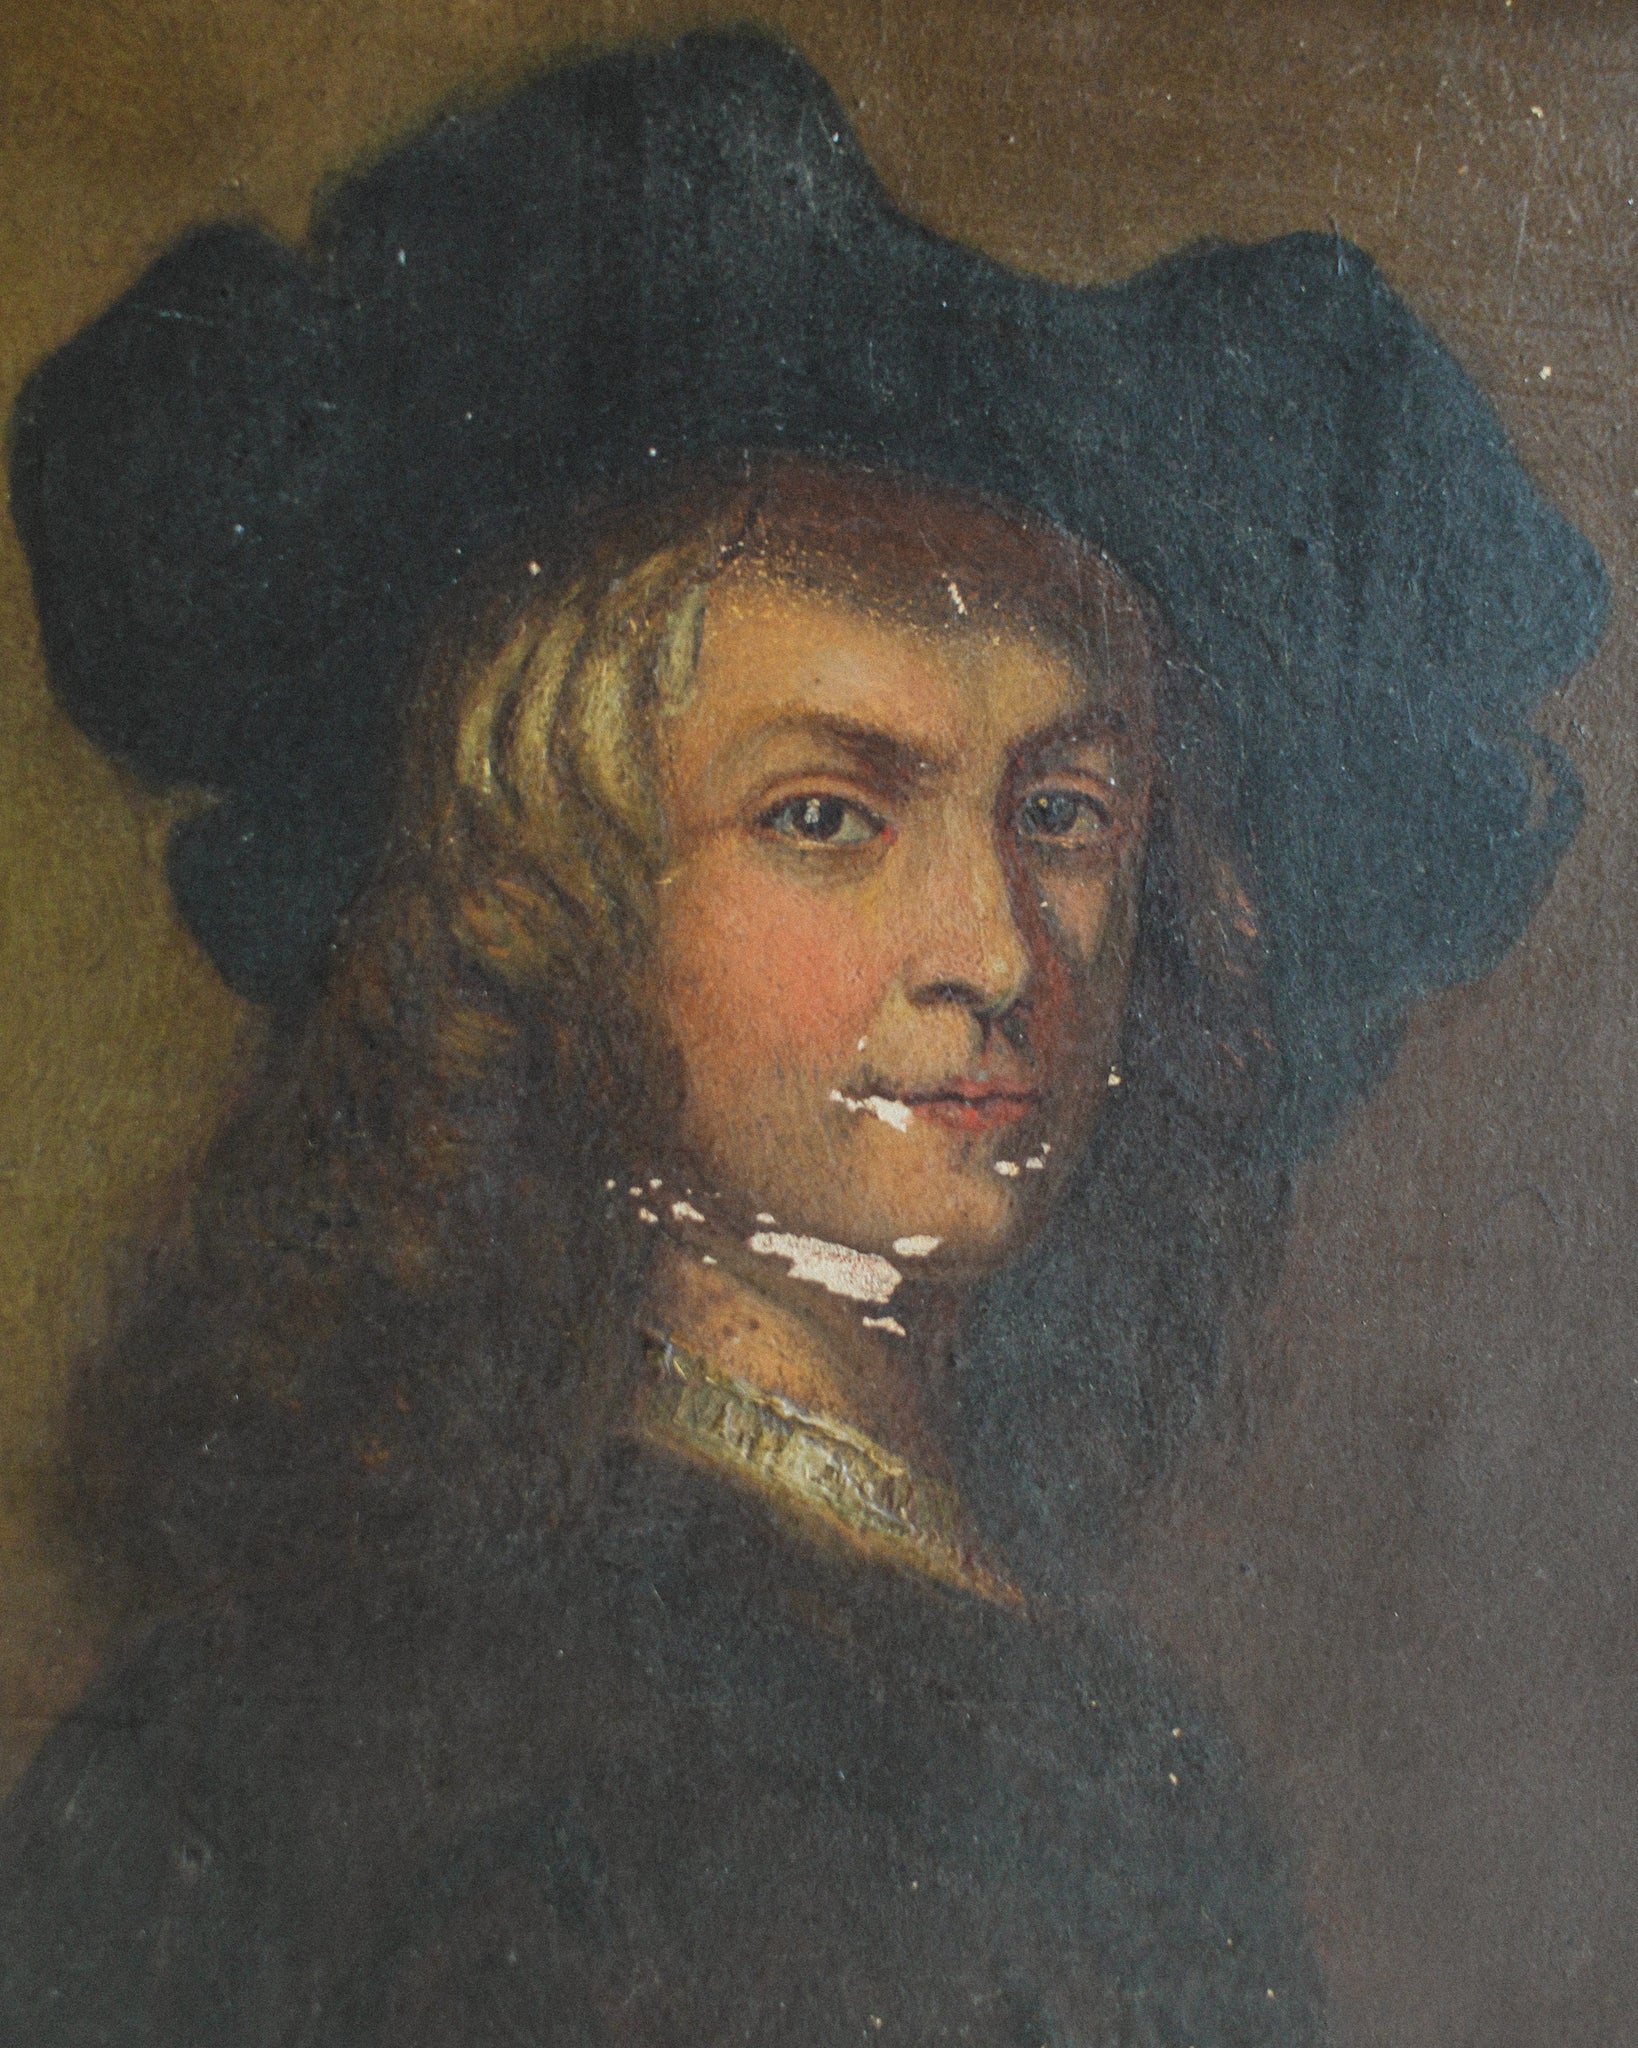 Man in Hat, Dutch School, 18th Century, Oil on Board